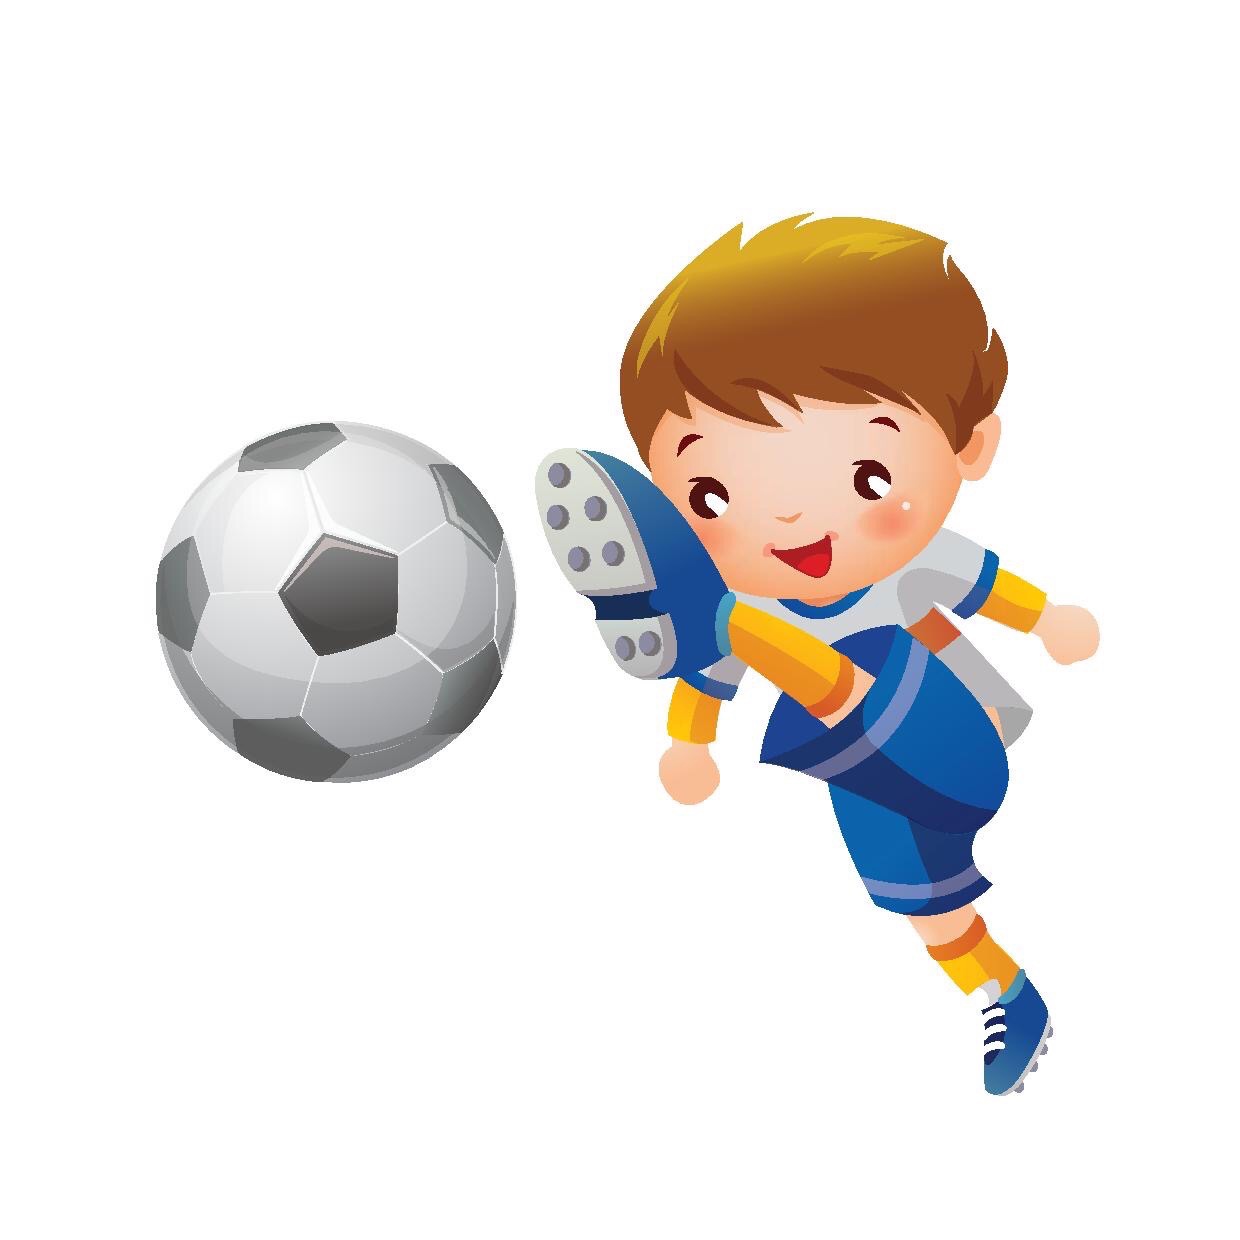 Изображения видов спорта для детей